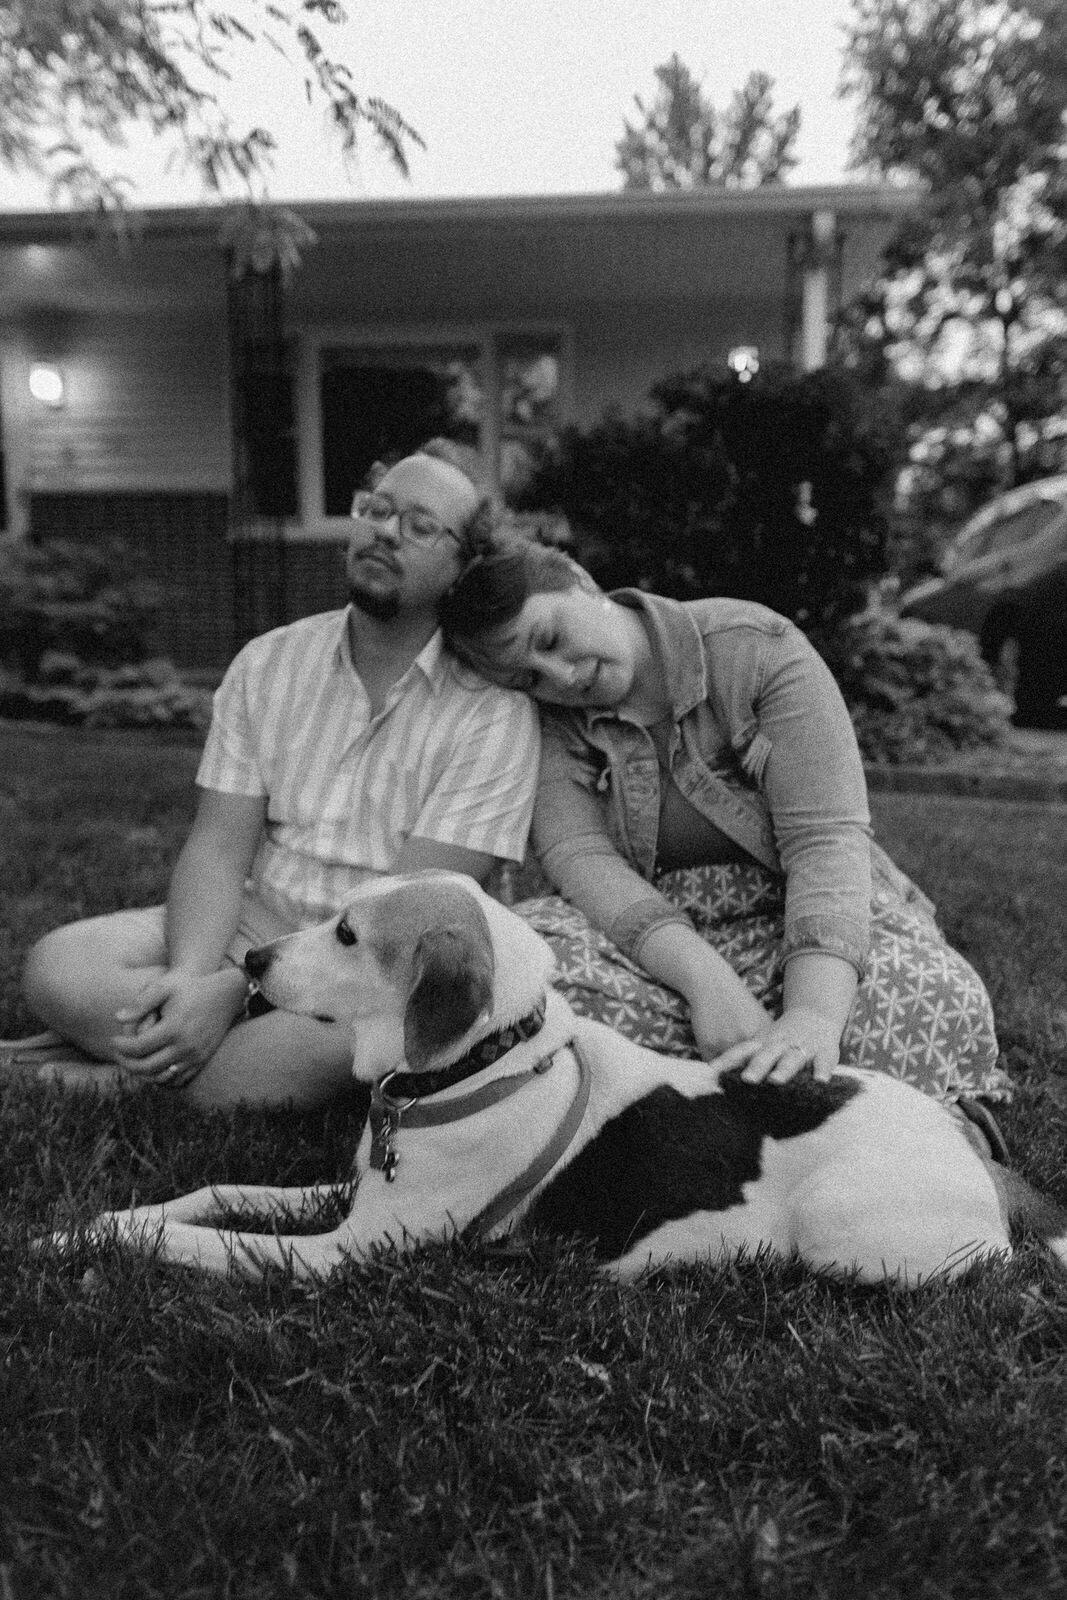 dog-family-photos-illinois-storytelling-emotional-36